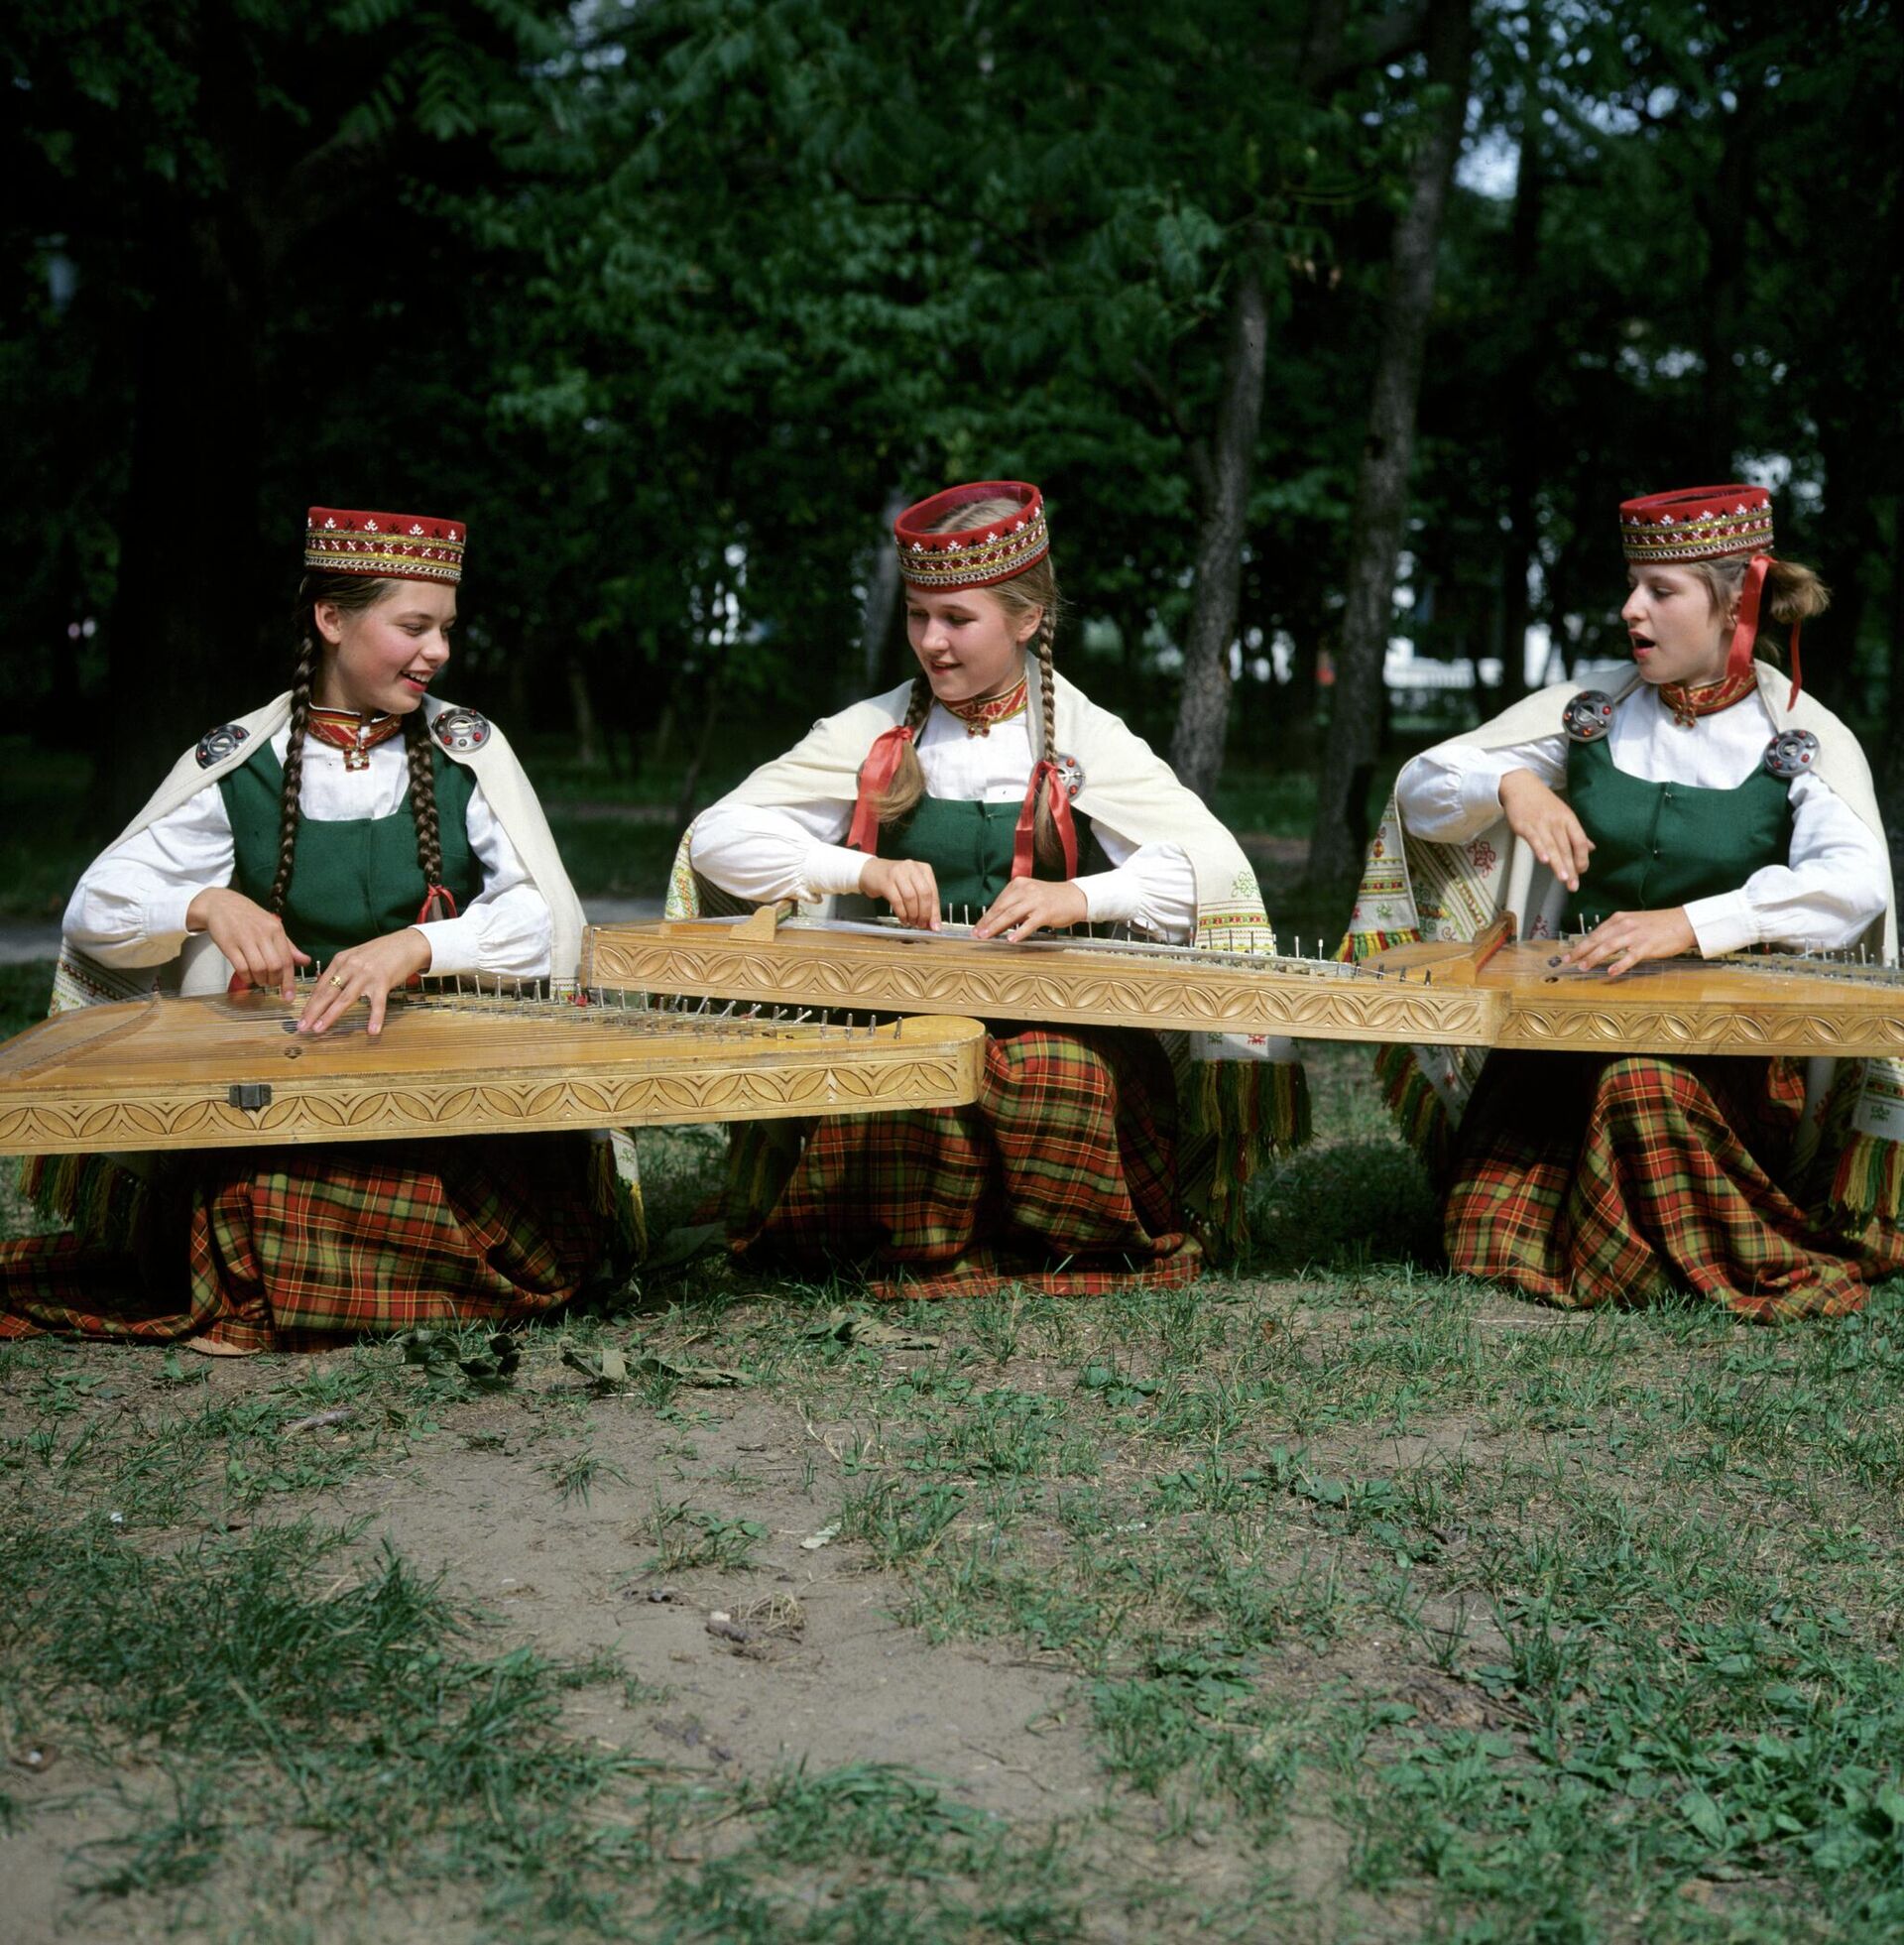 Латышские девушки играют на музыкальном инструменте - кантеле. - Sputnik Azərbaycan, 1920, 07.11.2022